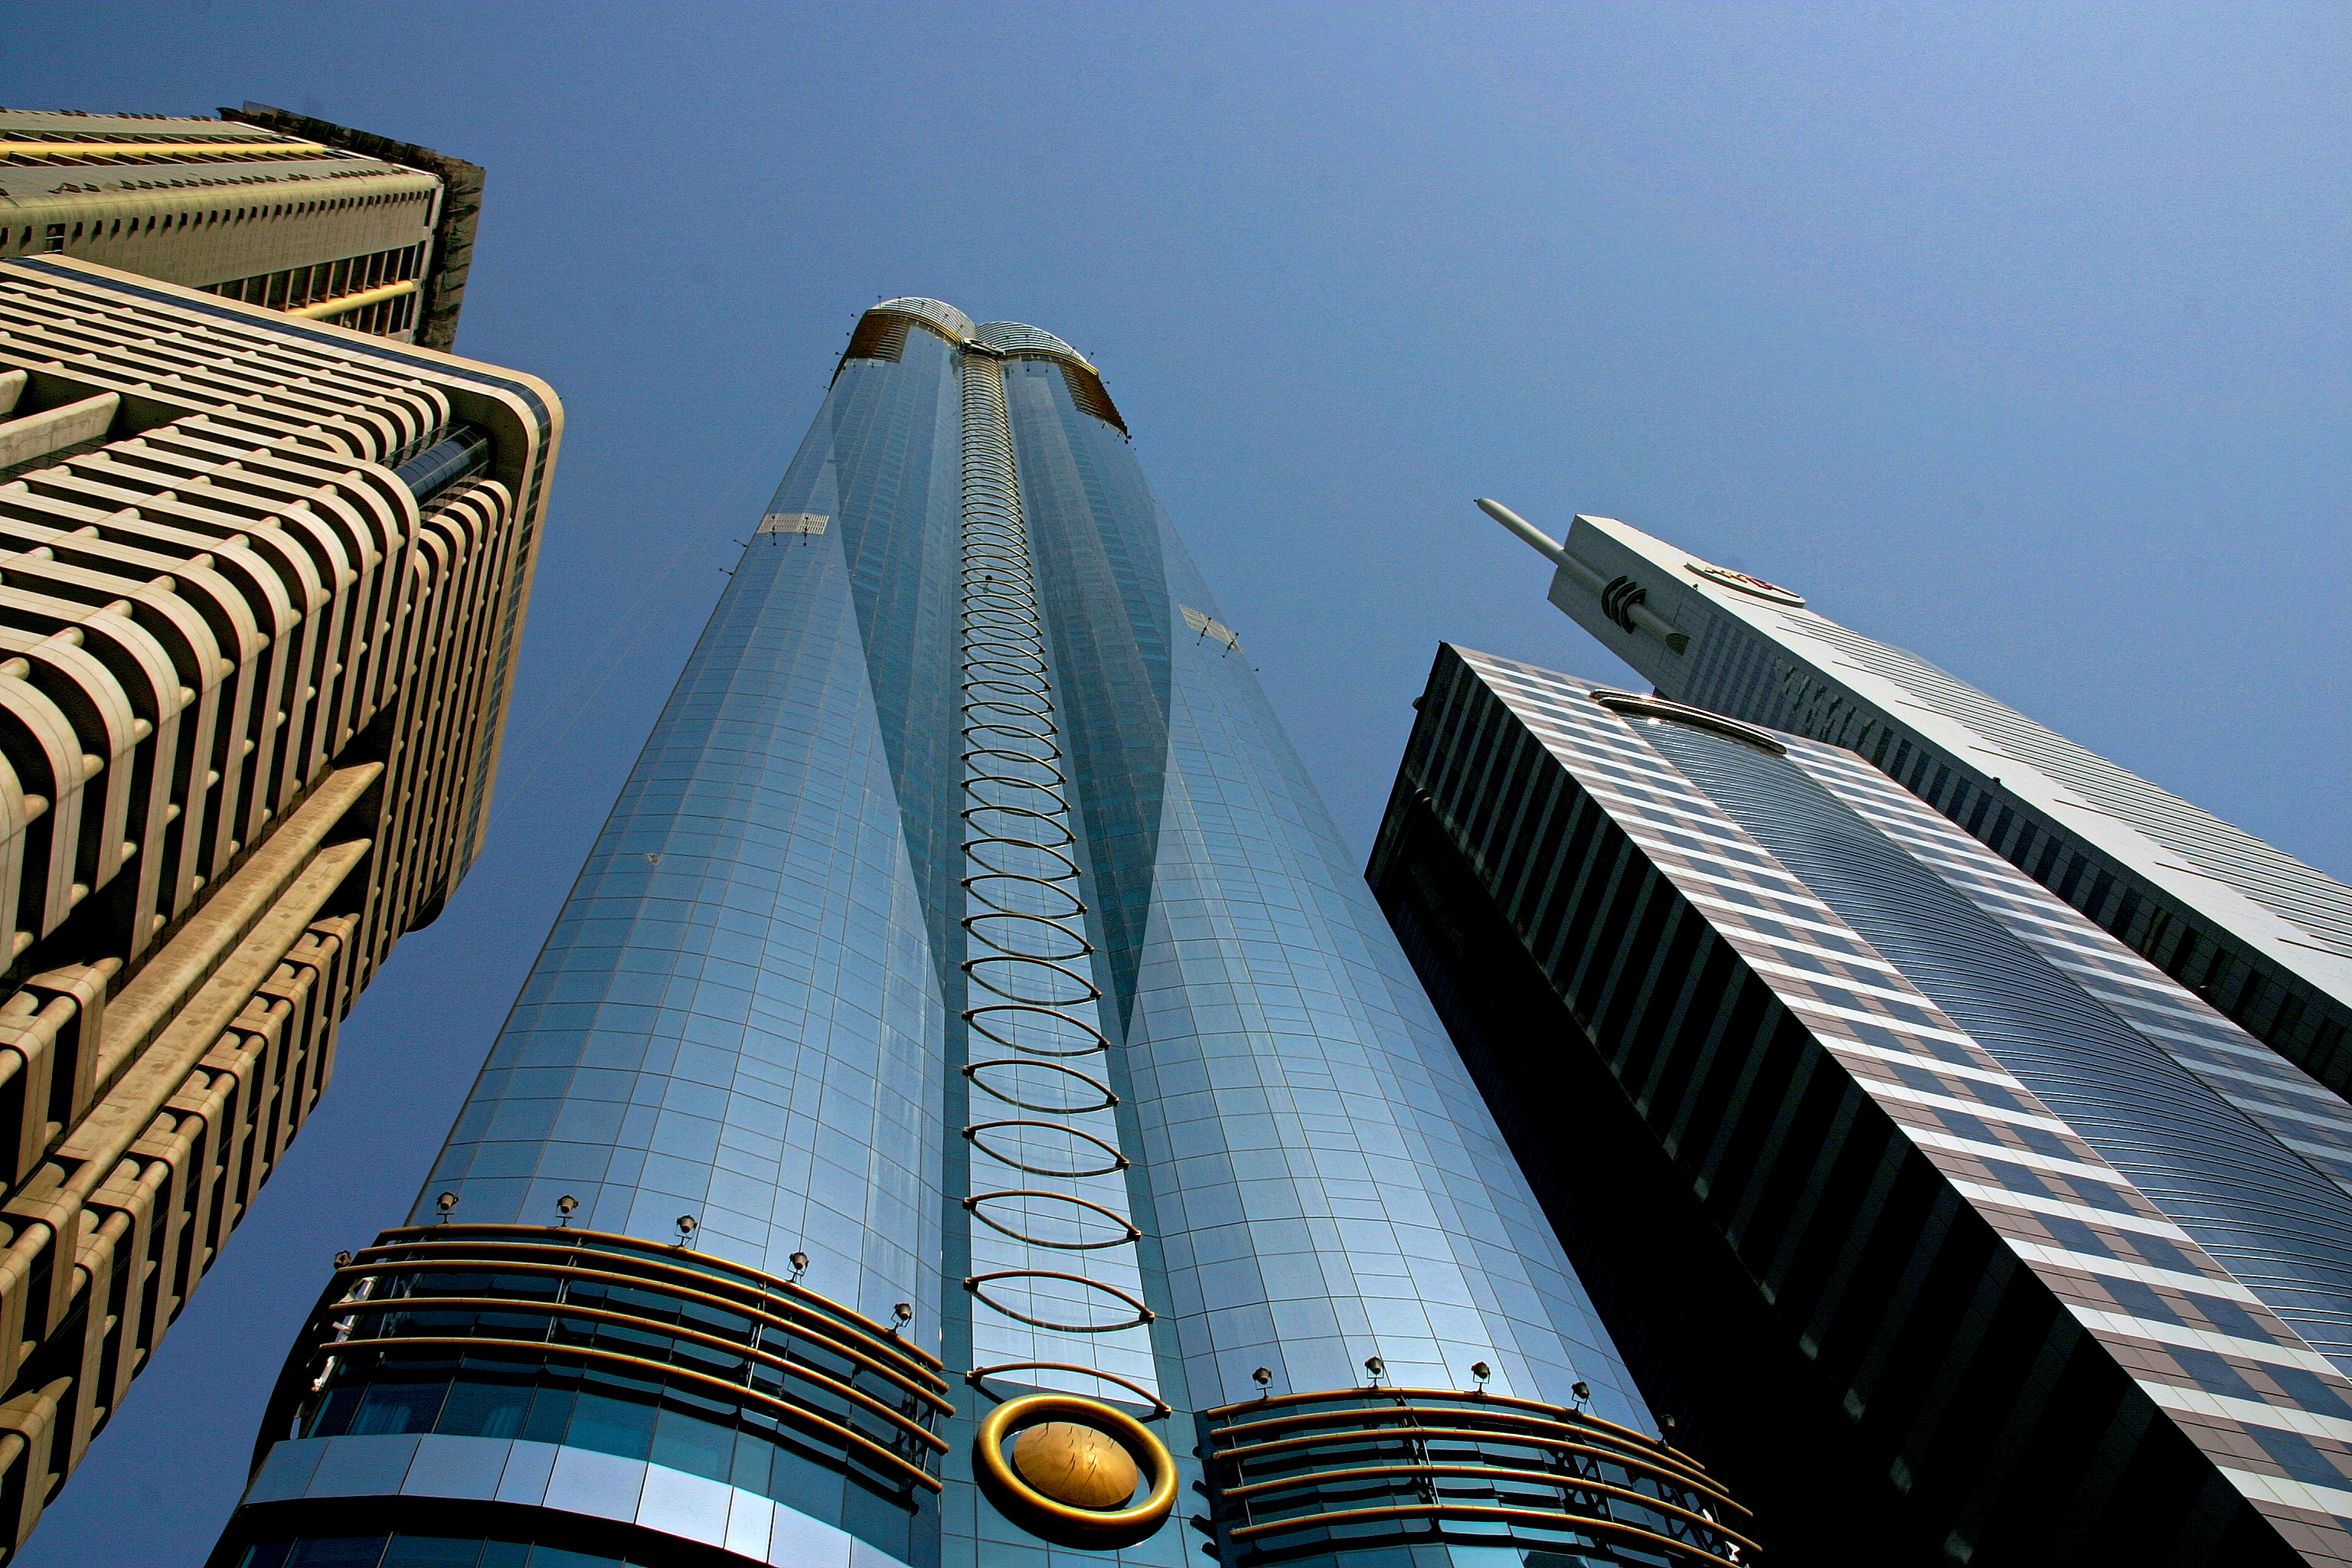 A Sheik Zayed Road felhőkarcolói - a híres Rose Tower felhőkarcolóval, amely a rózsabimbót formázó tetejéről kapta a nevét